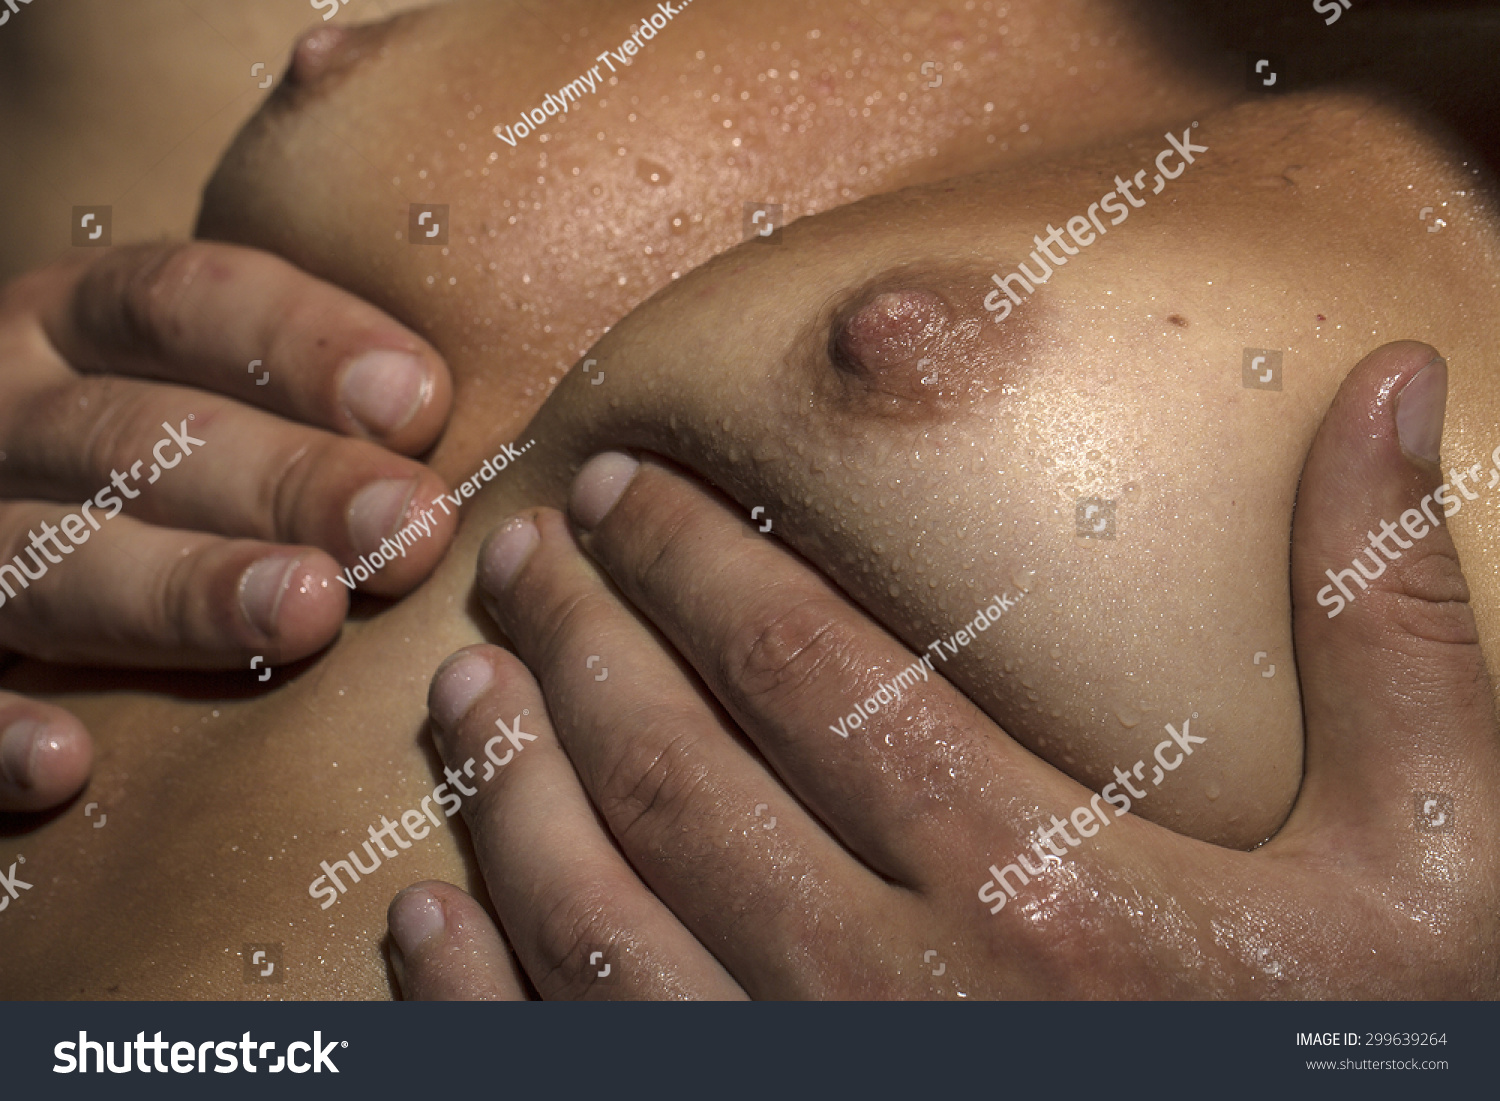 naked nipple close ups